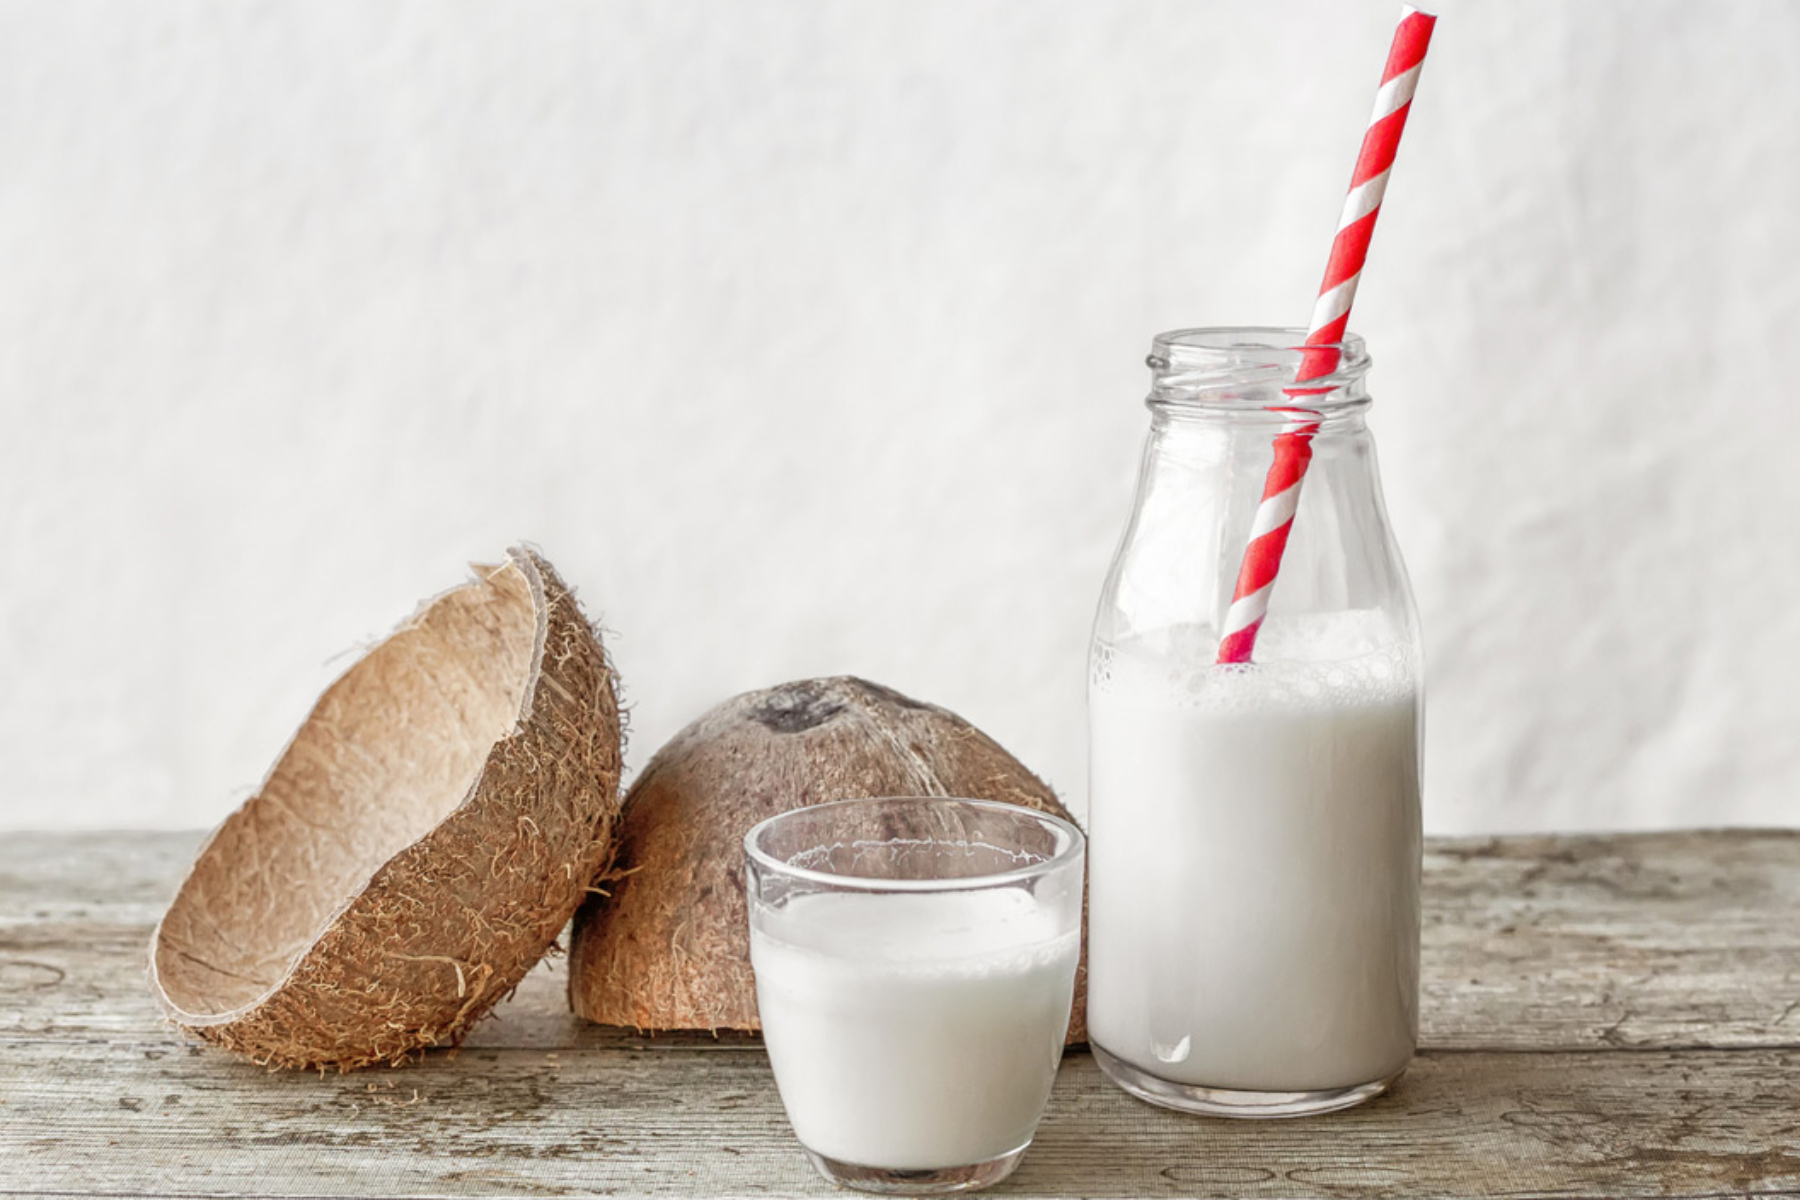 Γάλα καρύδας: Γιατί το γάλα καρύδας θεωρείται θρεπτικό;